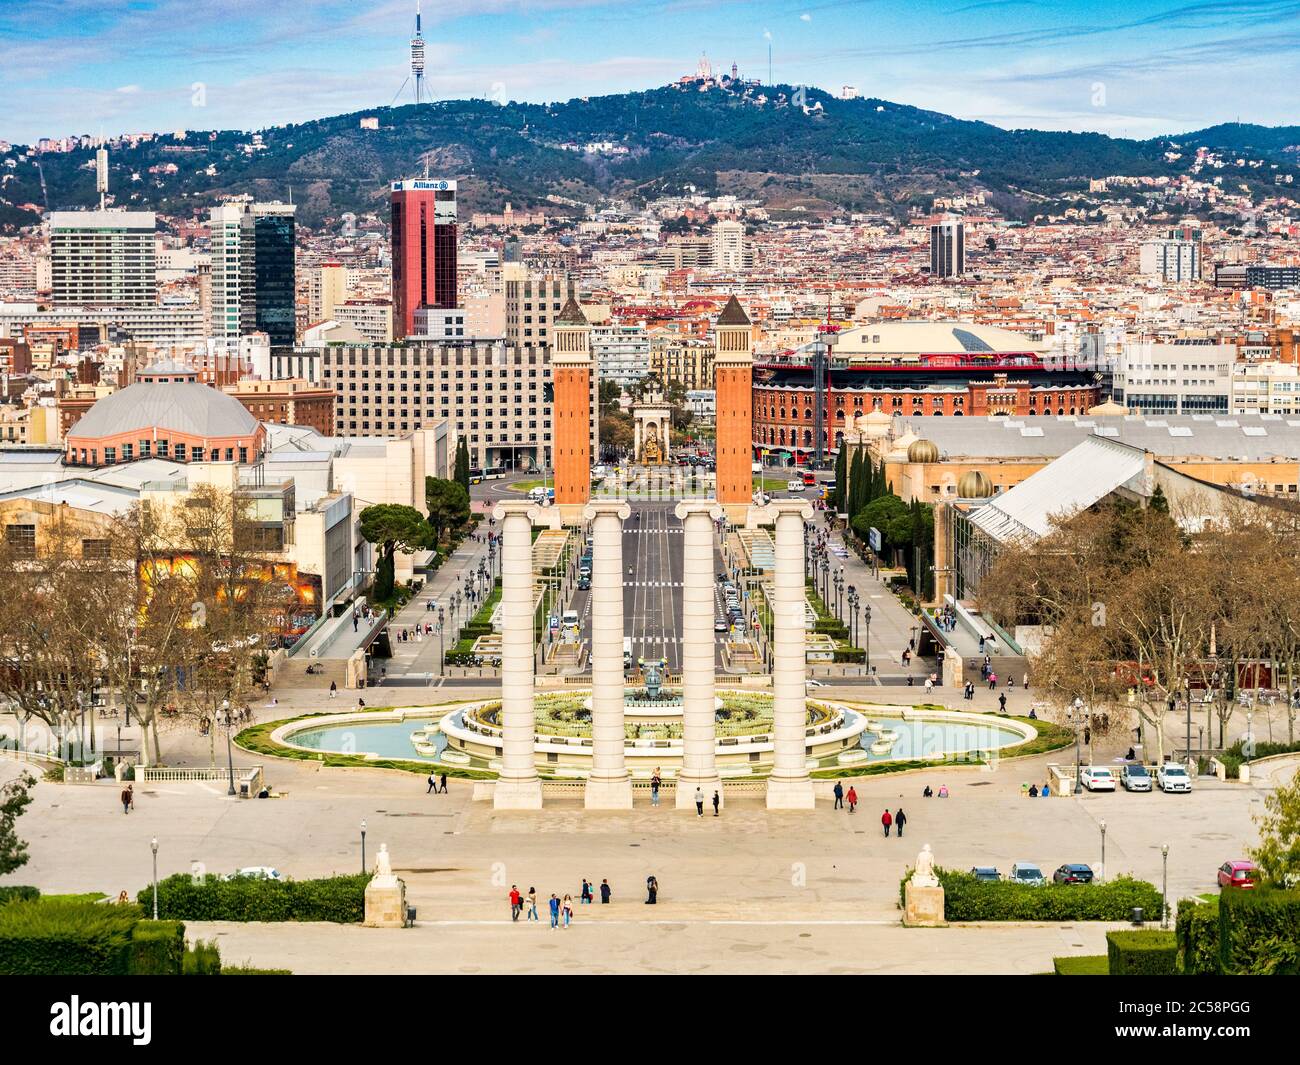 4 mars 2020: Barcelone, Espagne - vue de Barcelone depuis le Musée national d'Art de Catalogne vers la Plaça d'Espanya et le Mont Tibidabo. Banque D'Images